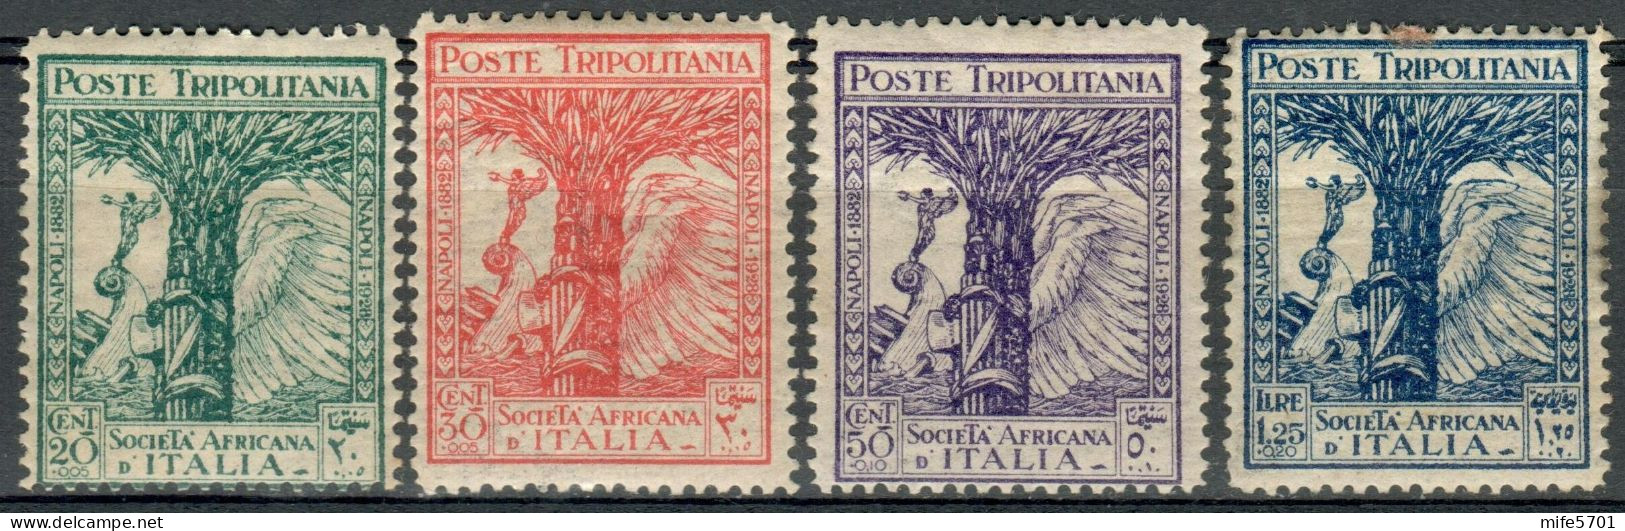 REGNO / COLONIE / TRIPOLITANIA 1928 SERIE PRO SOCIETÀ AFRICANA D'ITALIA 4 VALORI NUOVI CON LINGUELLA MLH SASSONE 46 / 49 - Tripolitania